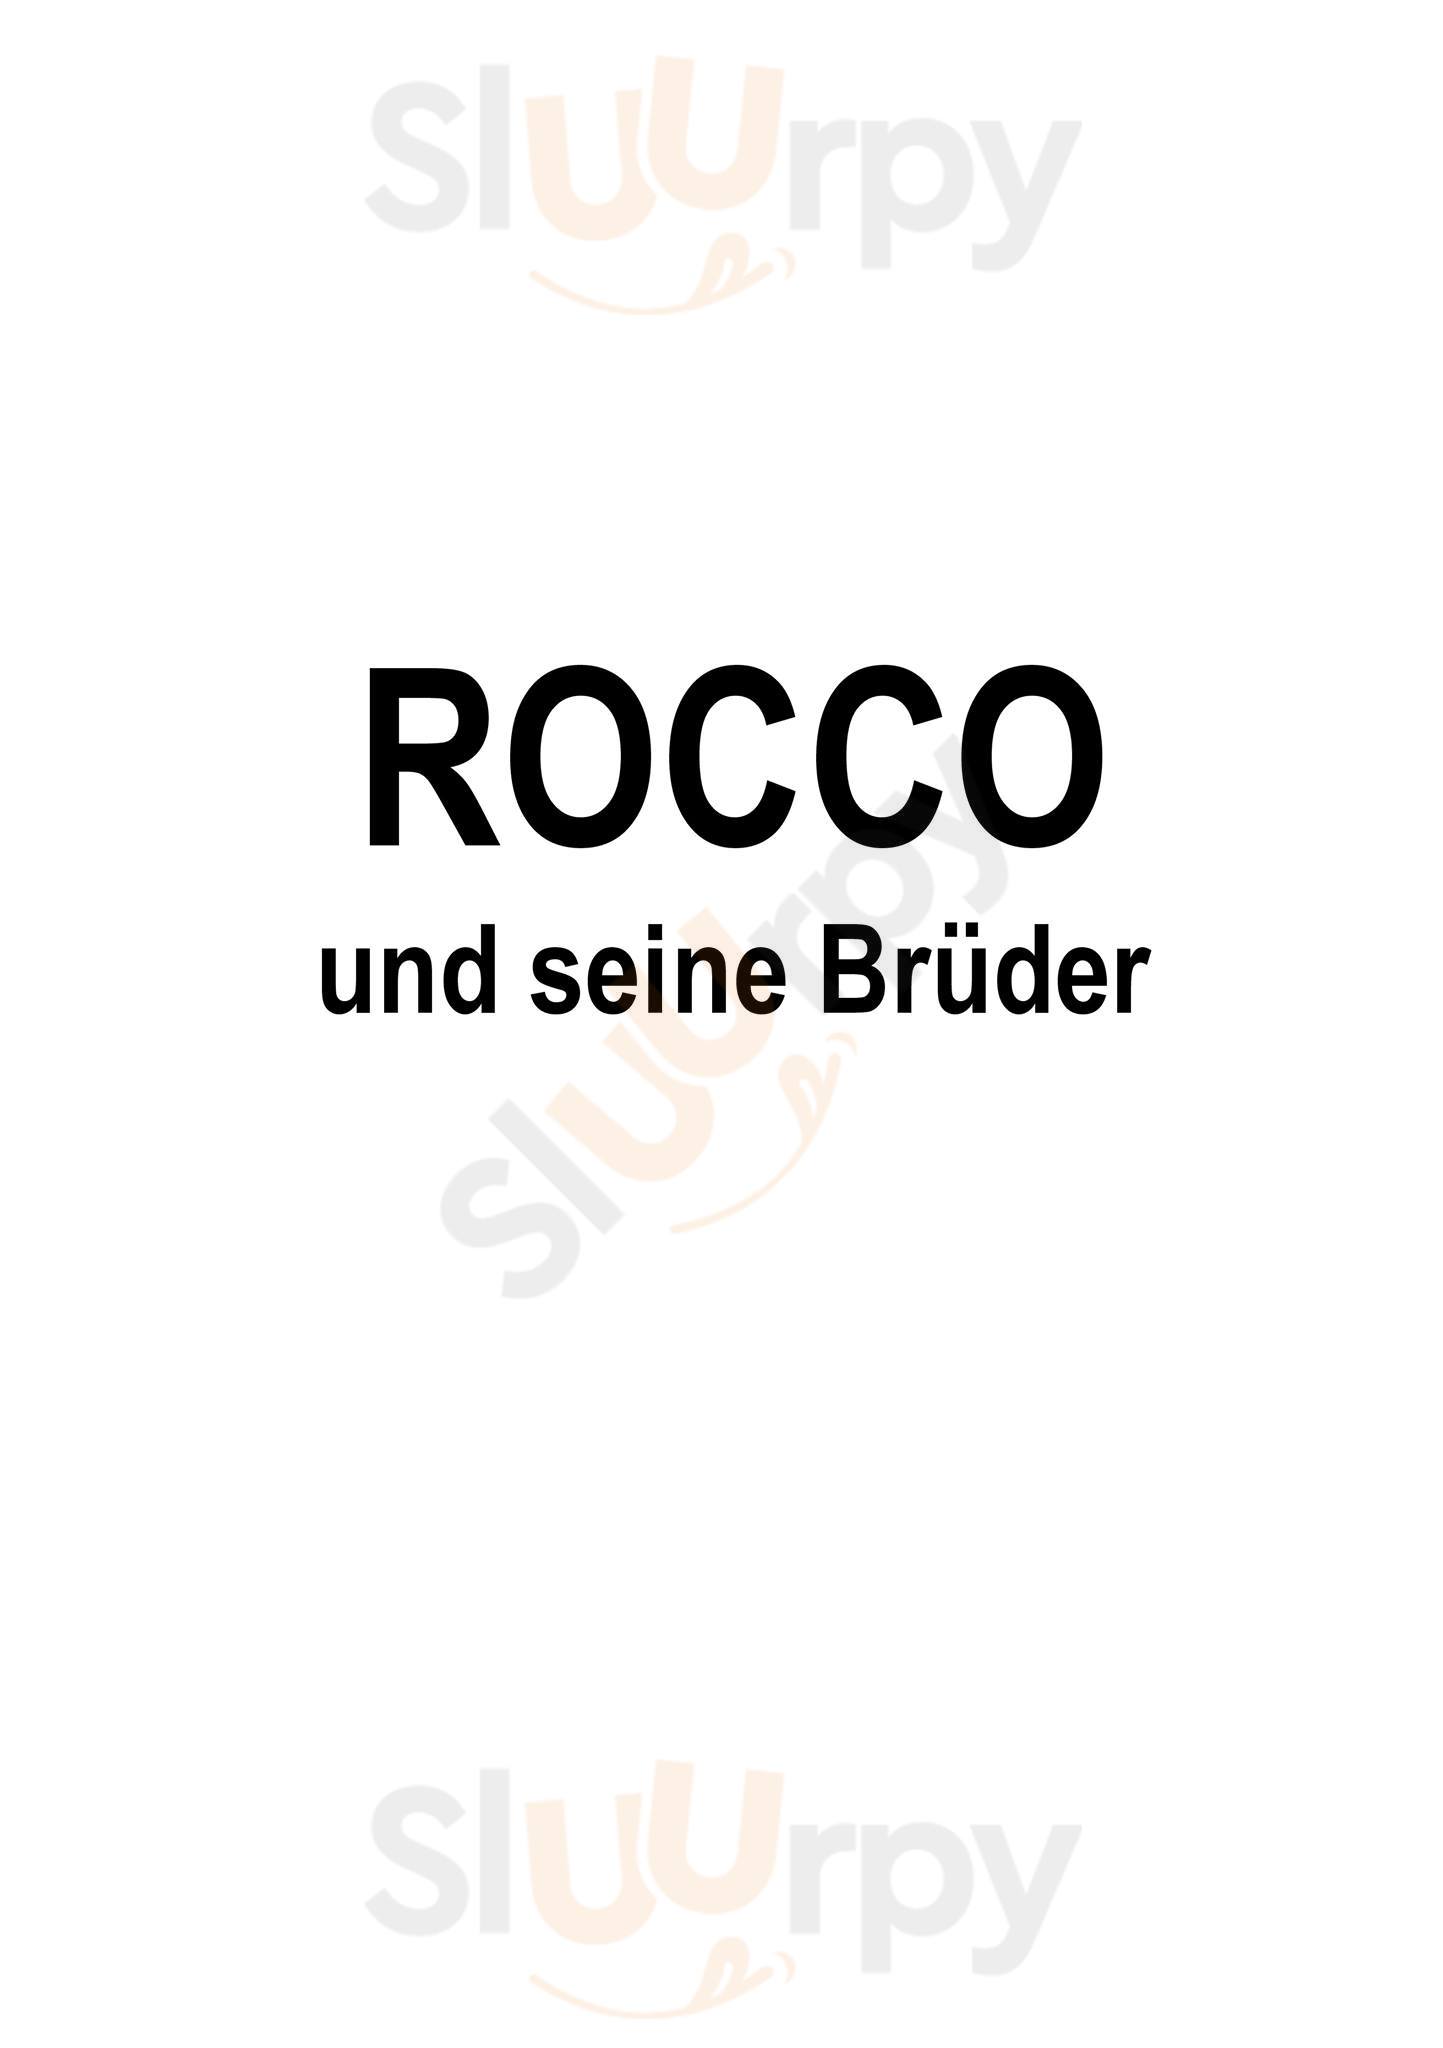 Rocco Und Seine Brüder Berlin Menu - 1